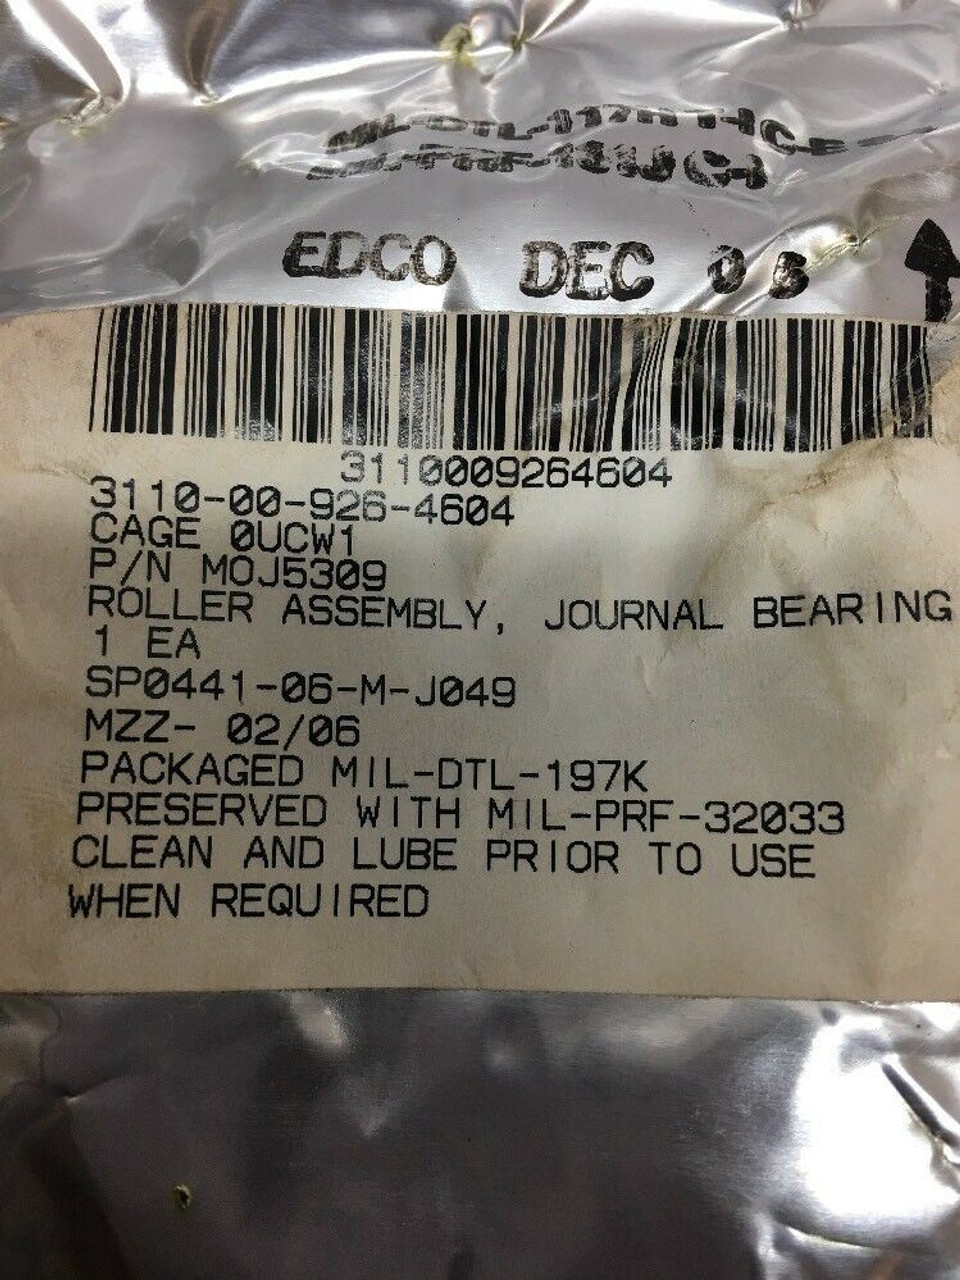 Journal Bearing Roller Assembly MOJ5309 National